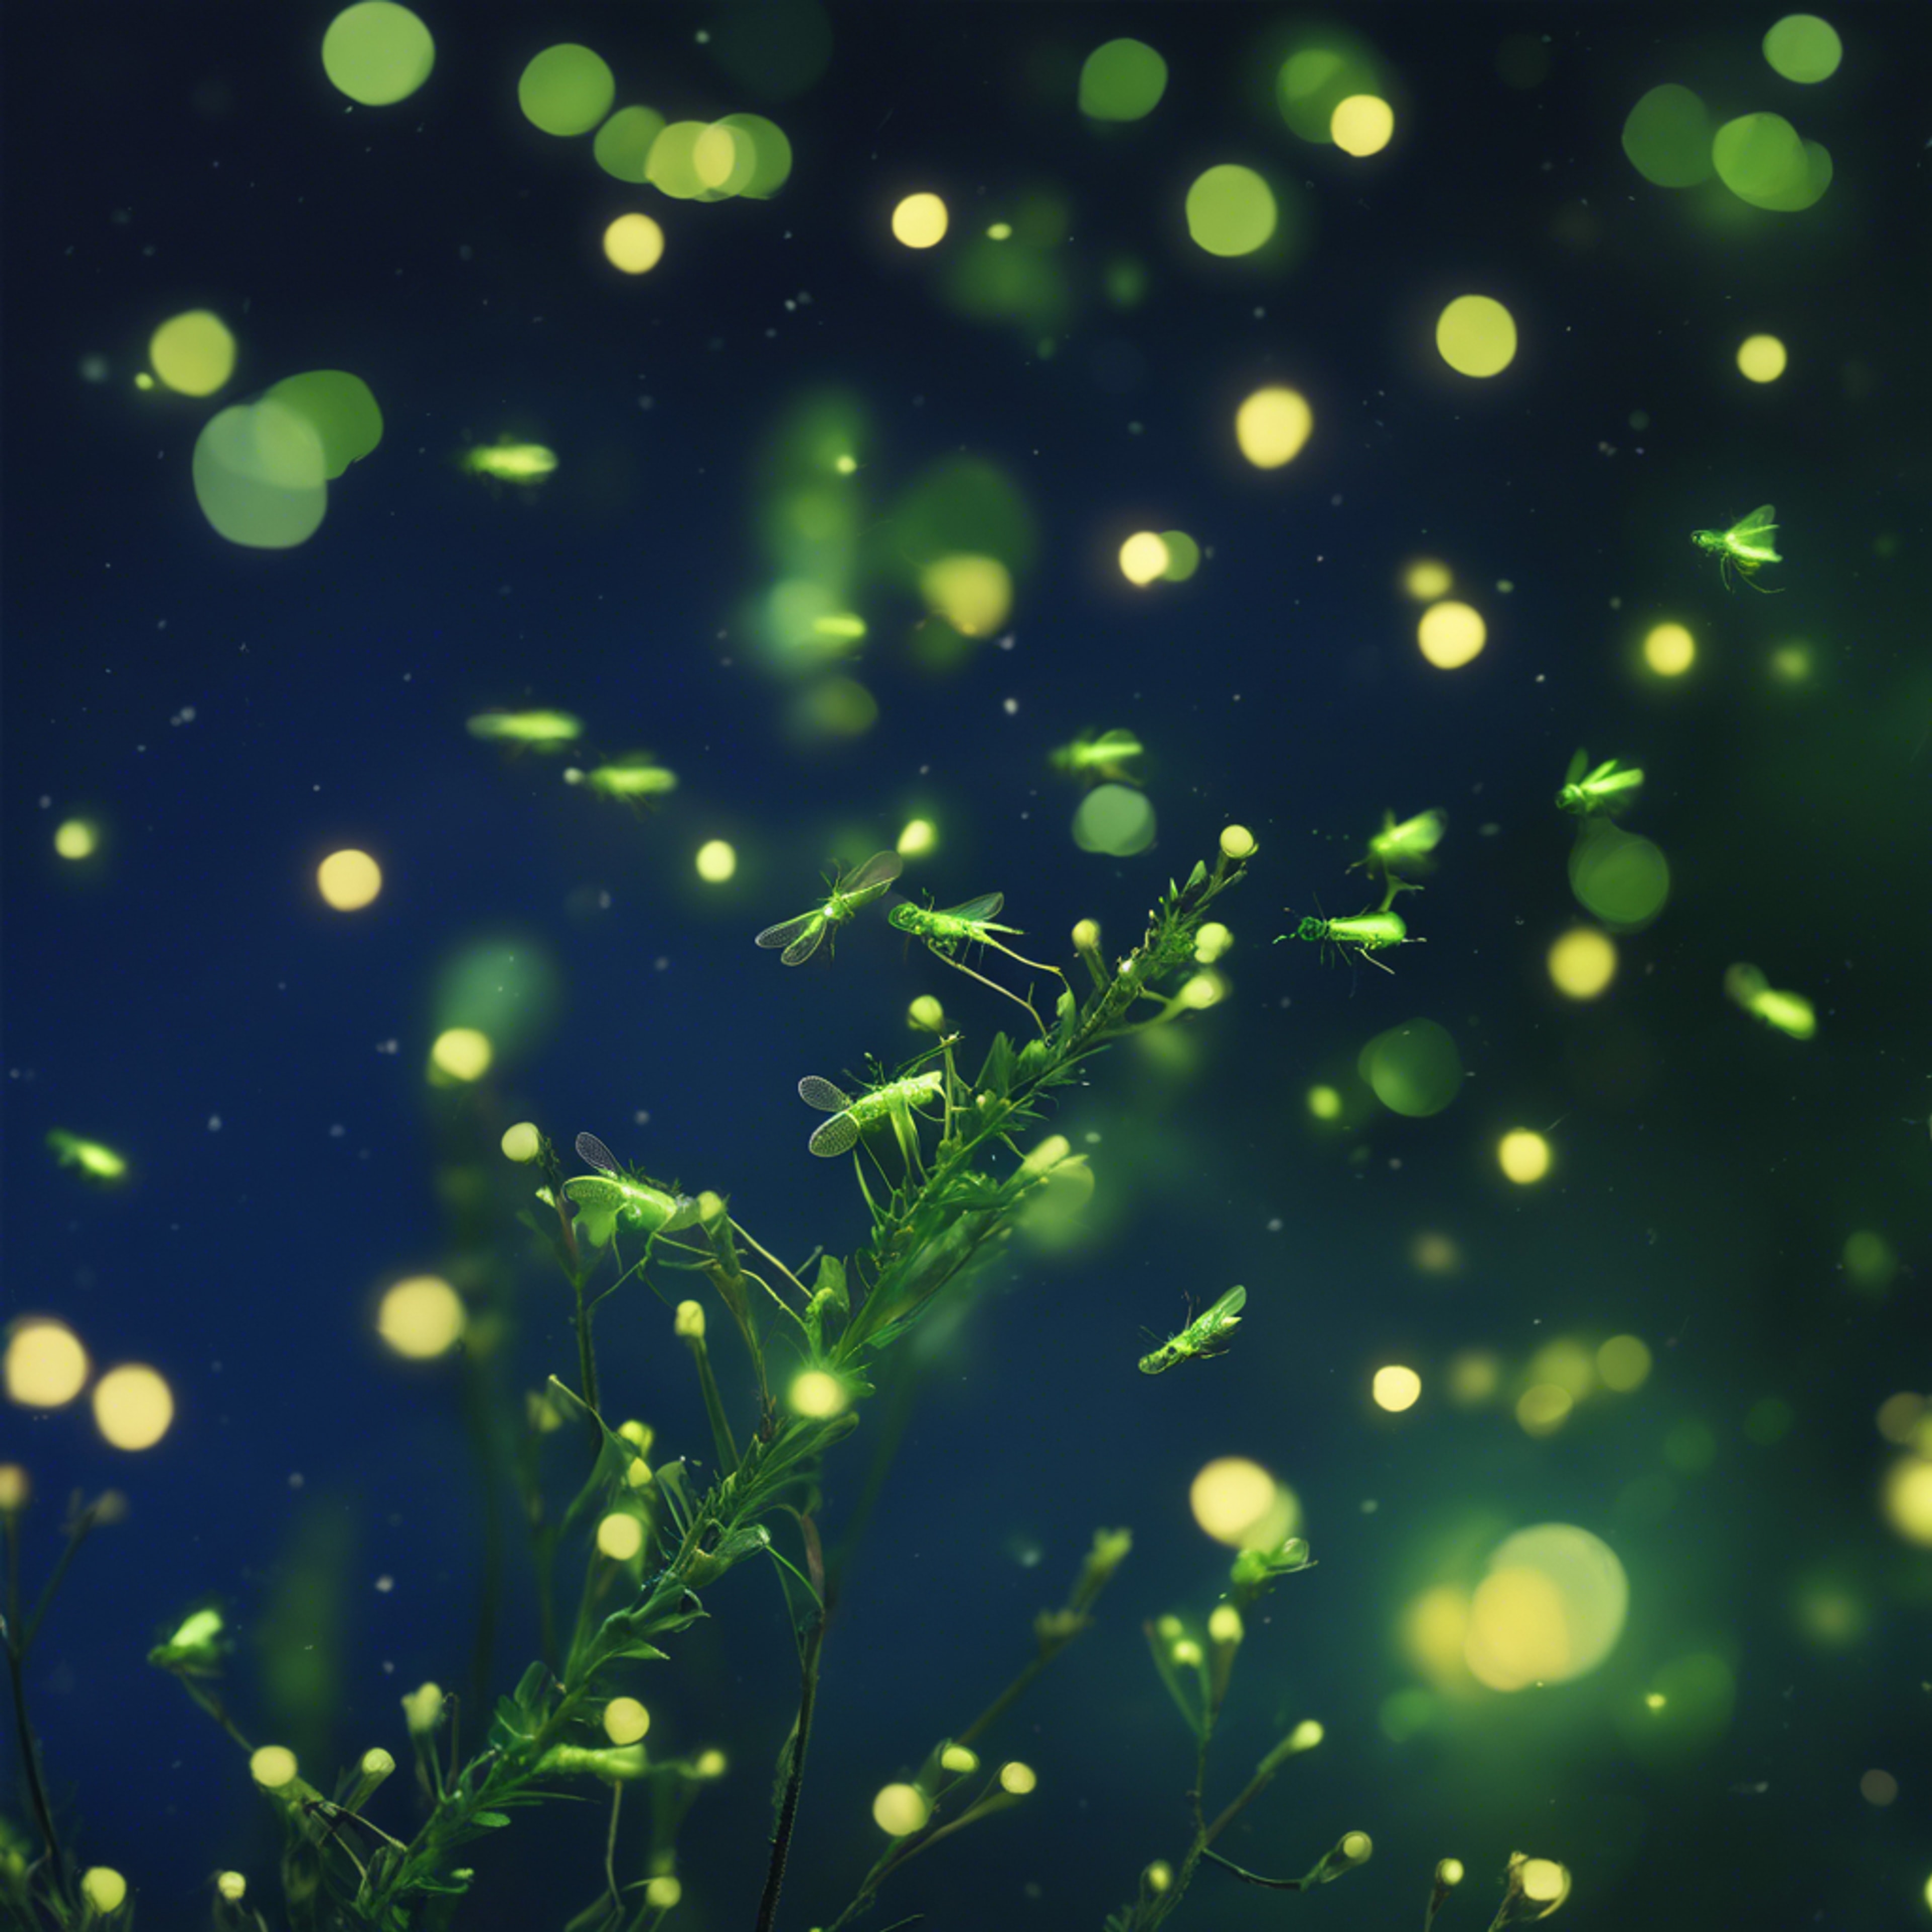 A myriad of emerald green fireflies flickering against a deep twilight blue sky. טפט[603476c68fd84f259627]